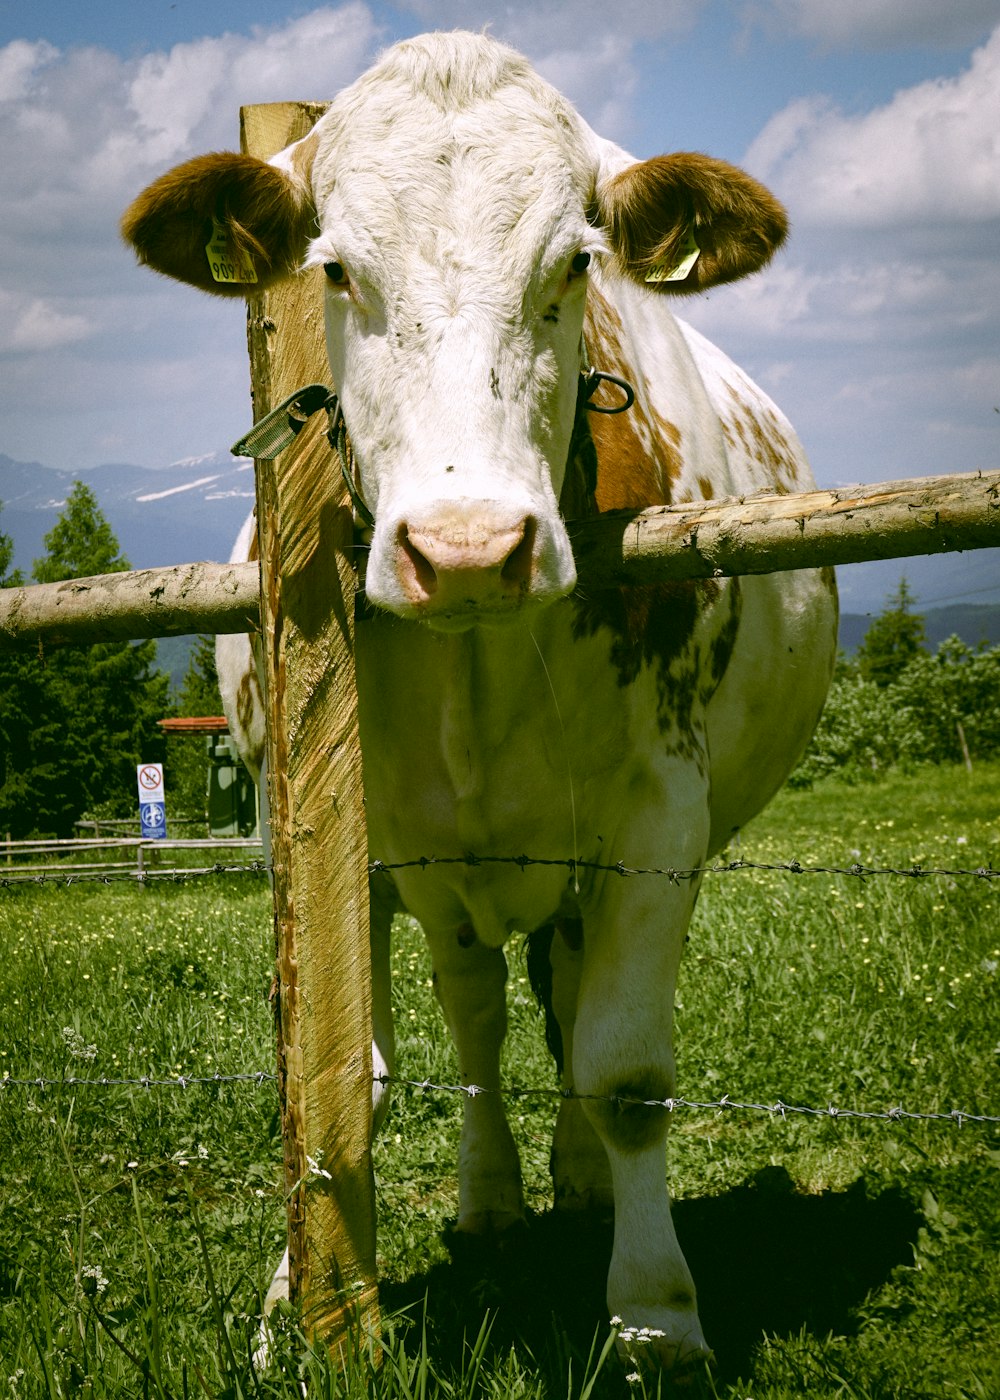 Vaca blanca y marrón en campo de hierba verde durante el día